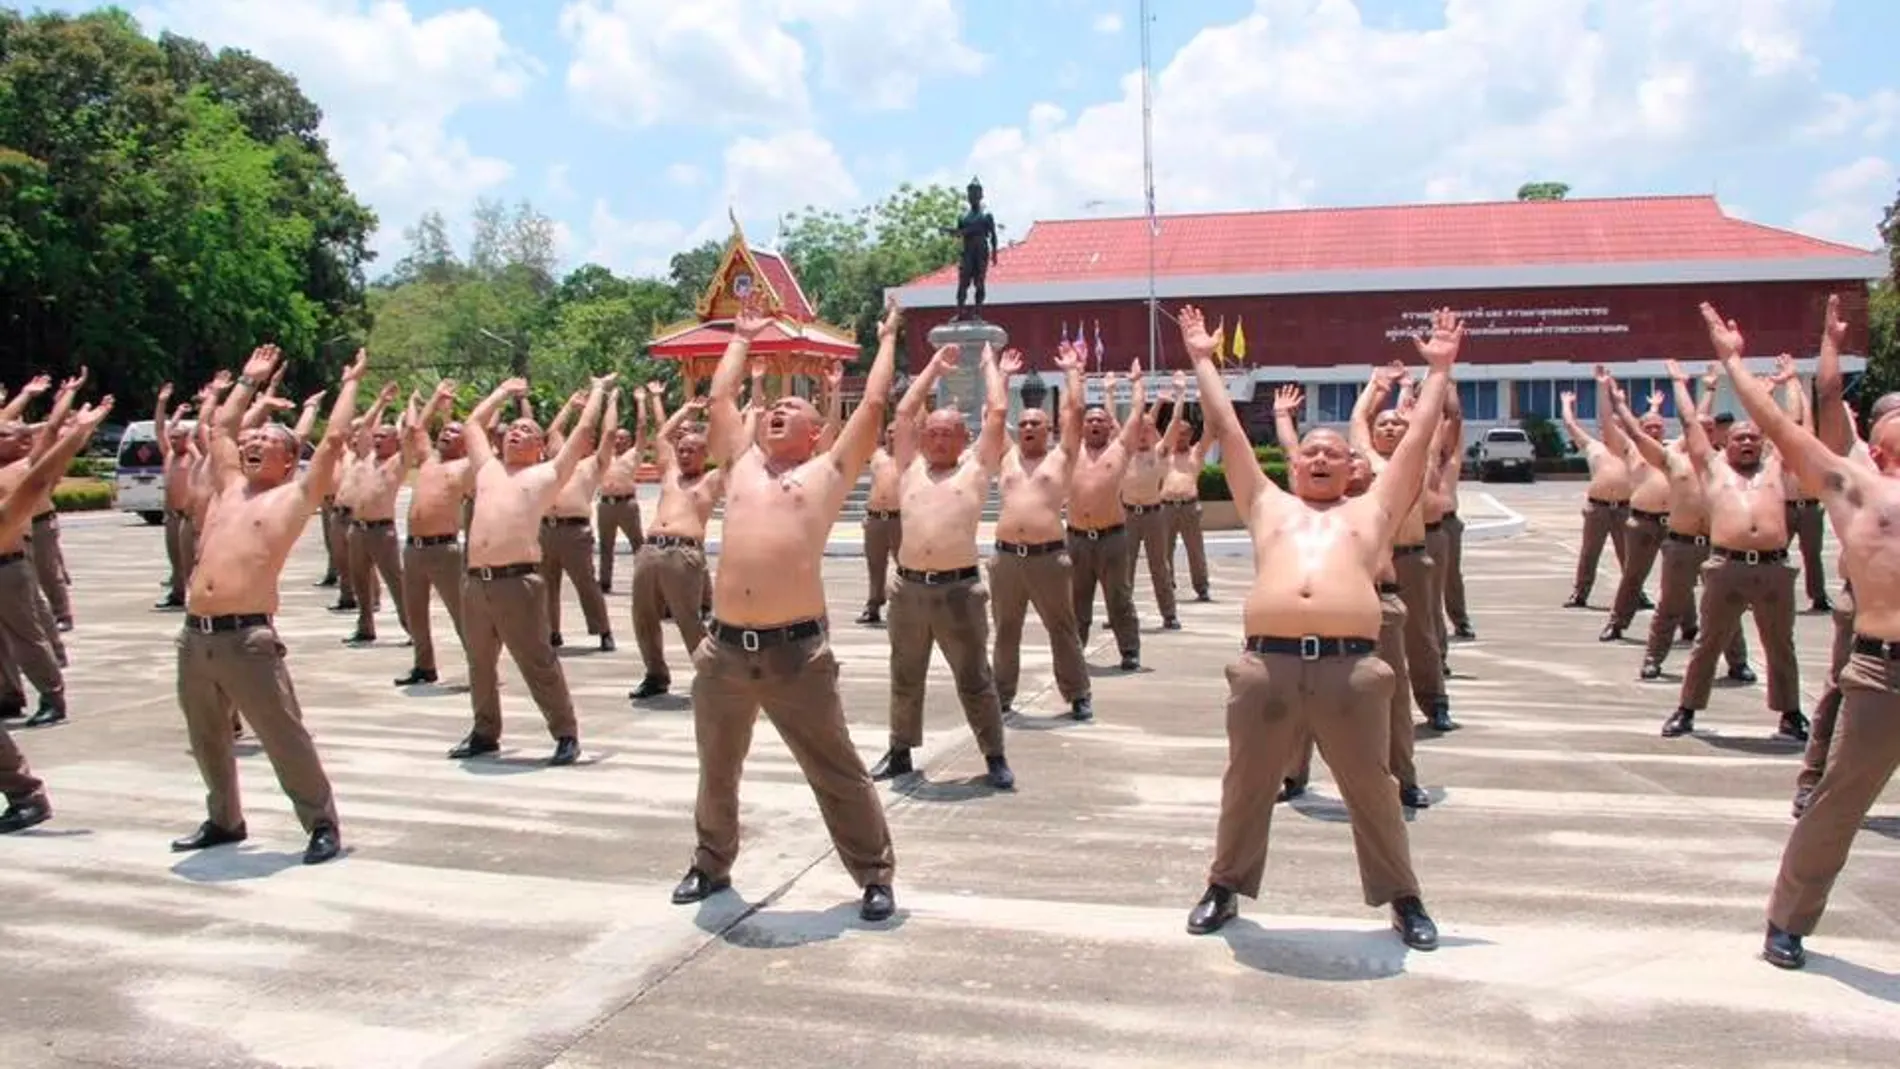 Policías tailandeses se someten a un programa de ejercicios para bajar de peso / Thaipolicenews.com